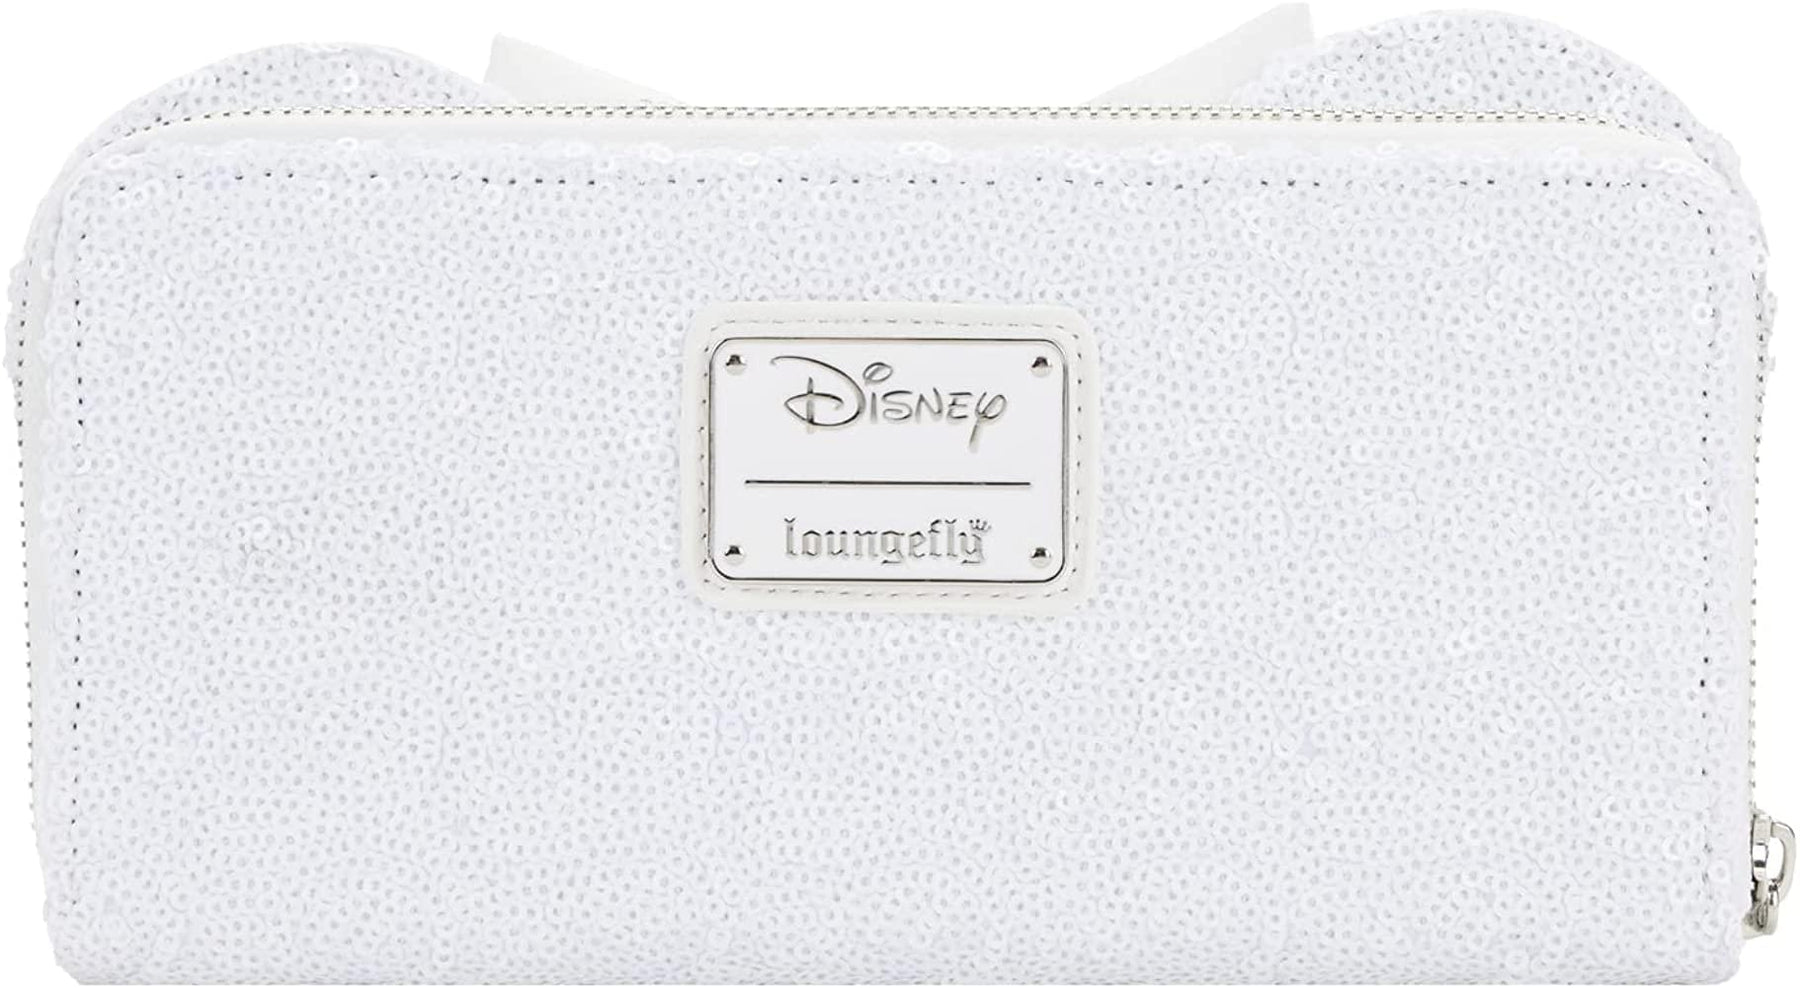 Disney 7 Minnie Mouse Zip Around Wallet in Polyurethane - Black